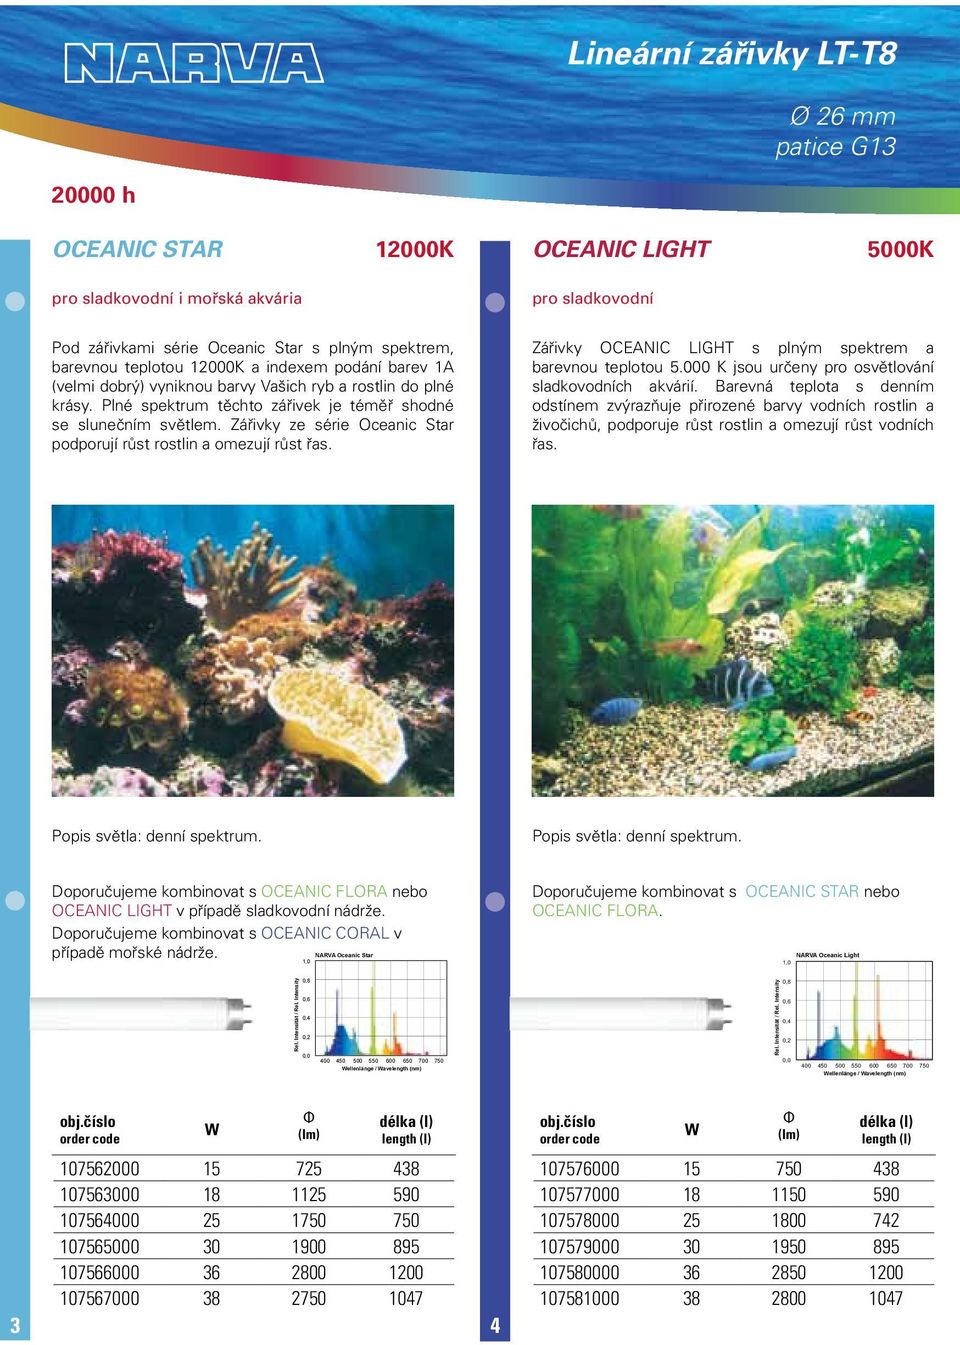 Zářivky ze série Oceanic Star podporují růst rostlin a omezují růst řas. Zářivky OCEANIC LIGHT s plným spektrem a barevnou teplotou 5.000 K jsou určeny pro osvětlování sladkovodních akvárií.